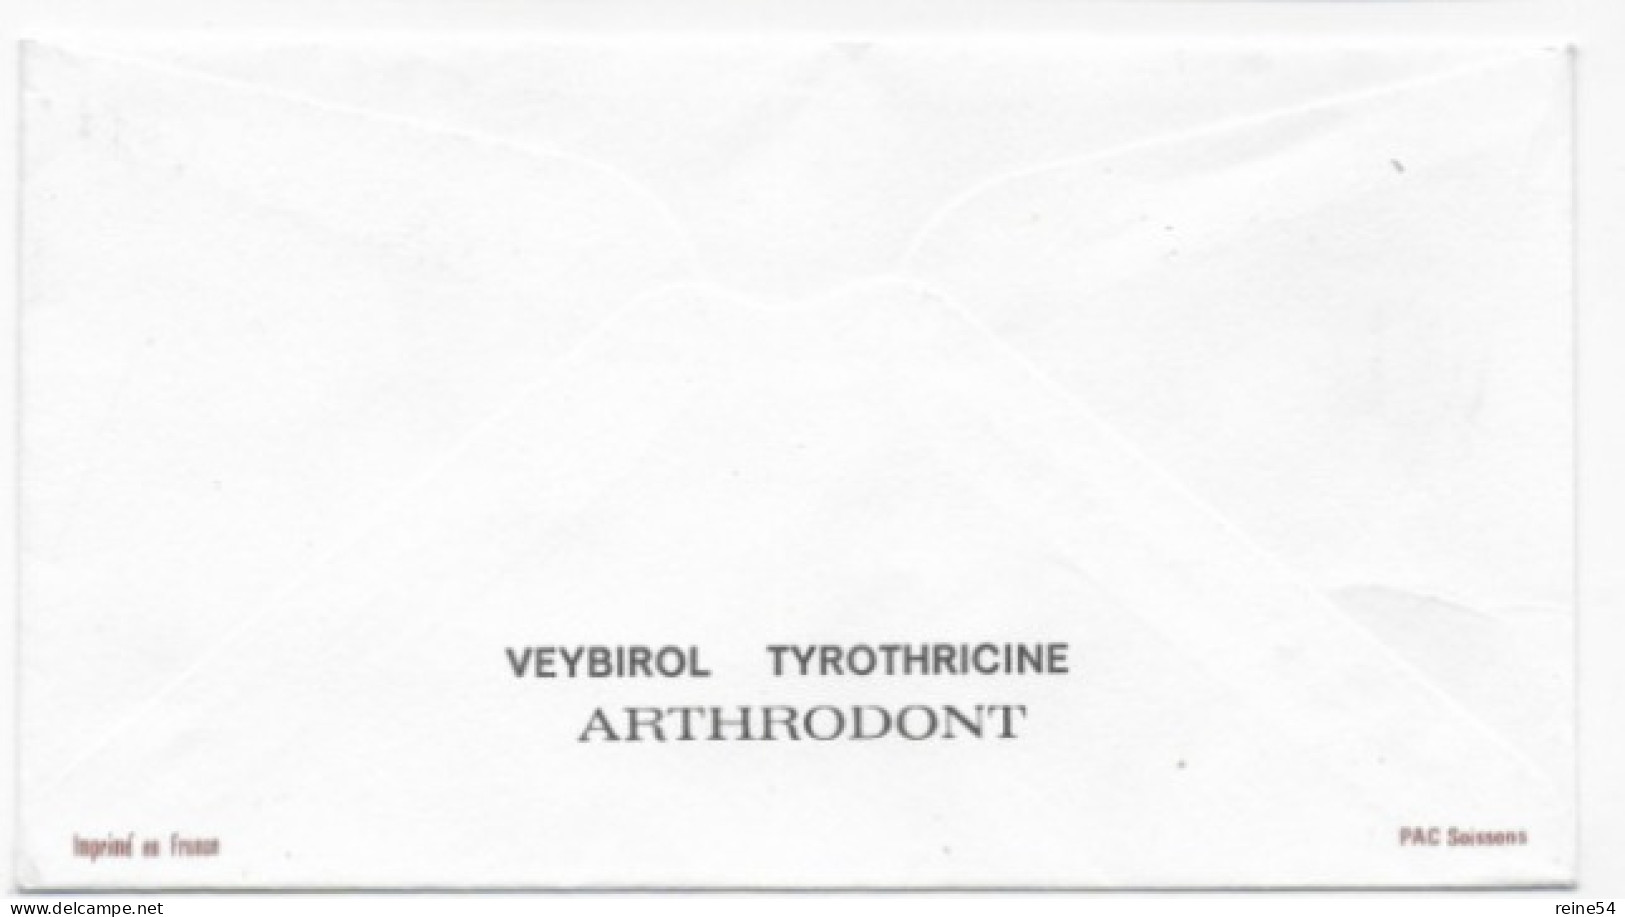 Enveloppe Premier Jour - Ulrie Zwingli 18-09-1969  Bern Ausgabetag  Helvetia (circulé) - Oblitérés